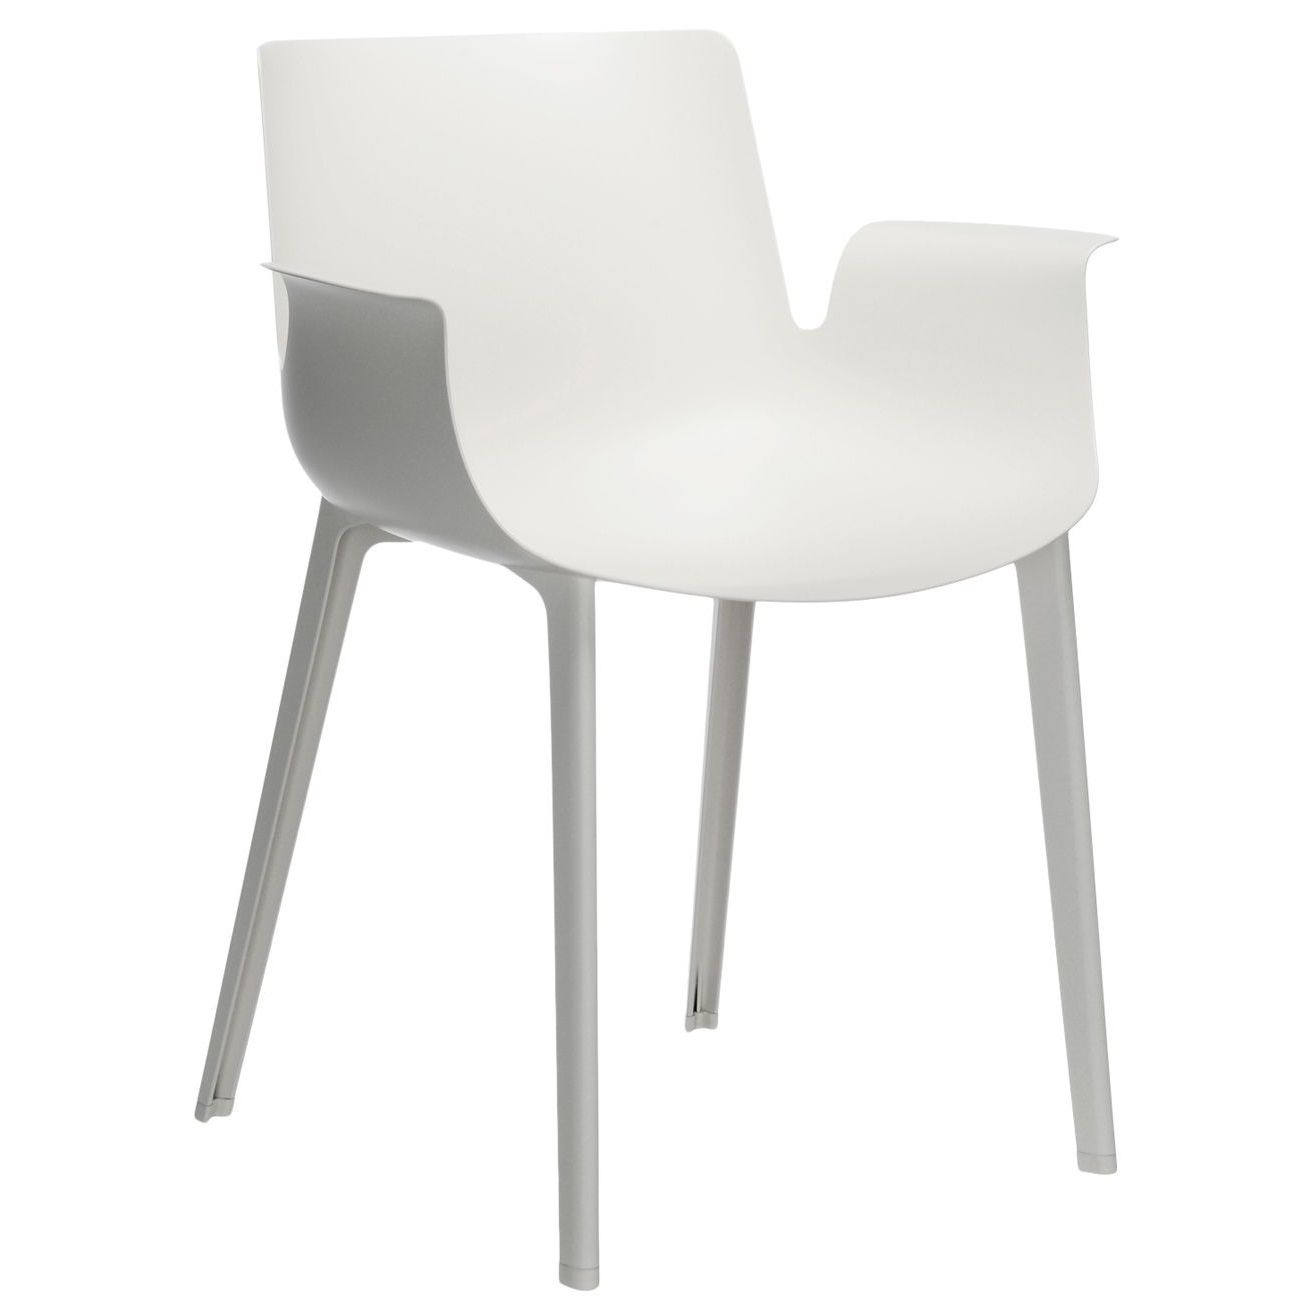 Výprodej Kartell designové židle Piuma (bílá) - DESIGNPROPAGANDA